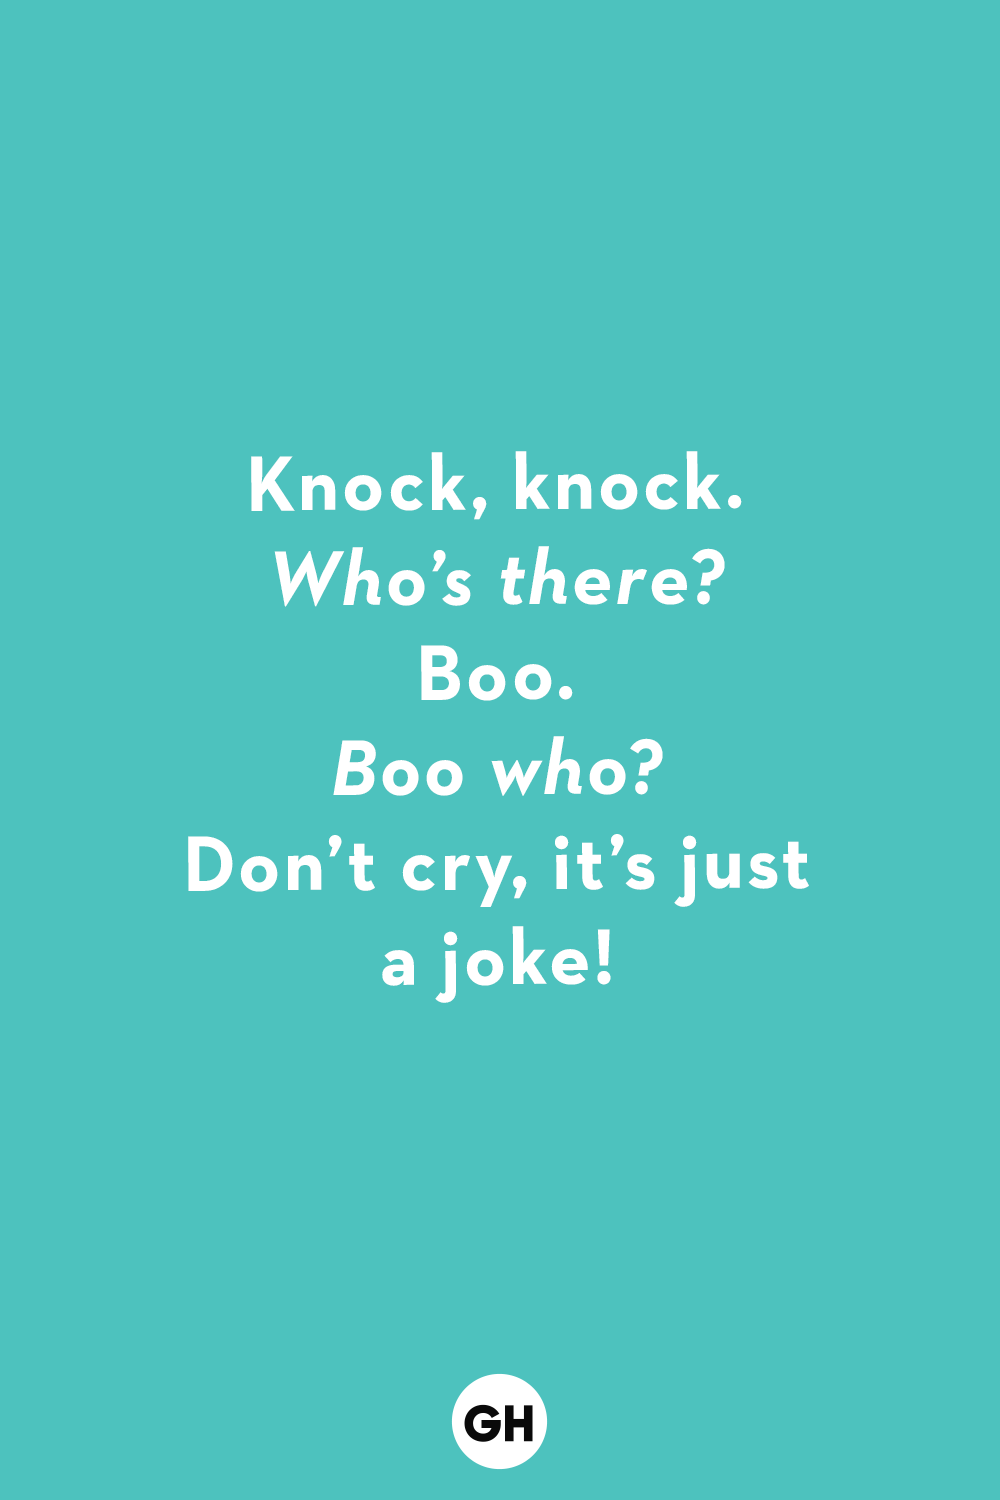 The Best Jokes For Kids Family Friendly Gags Knock Knock Jokes